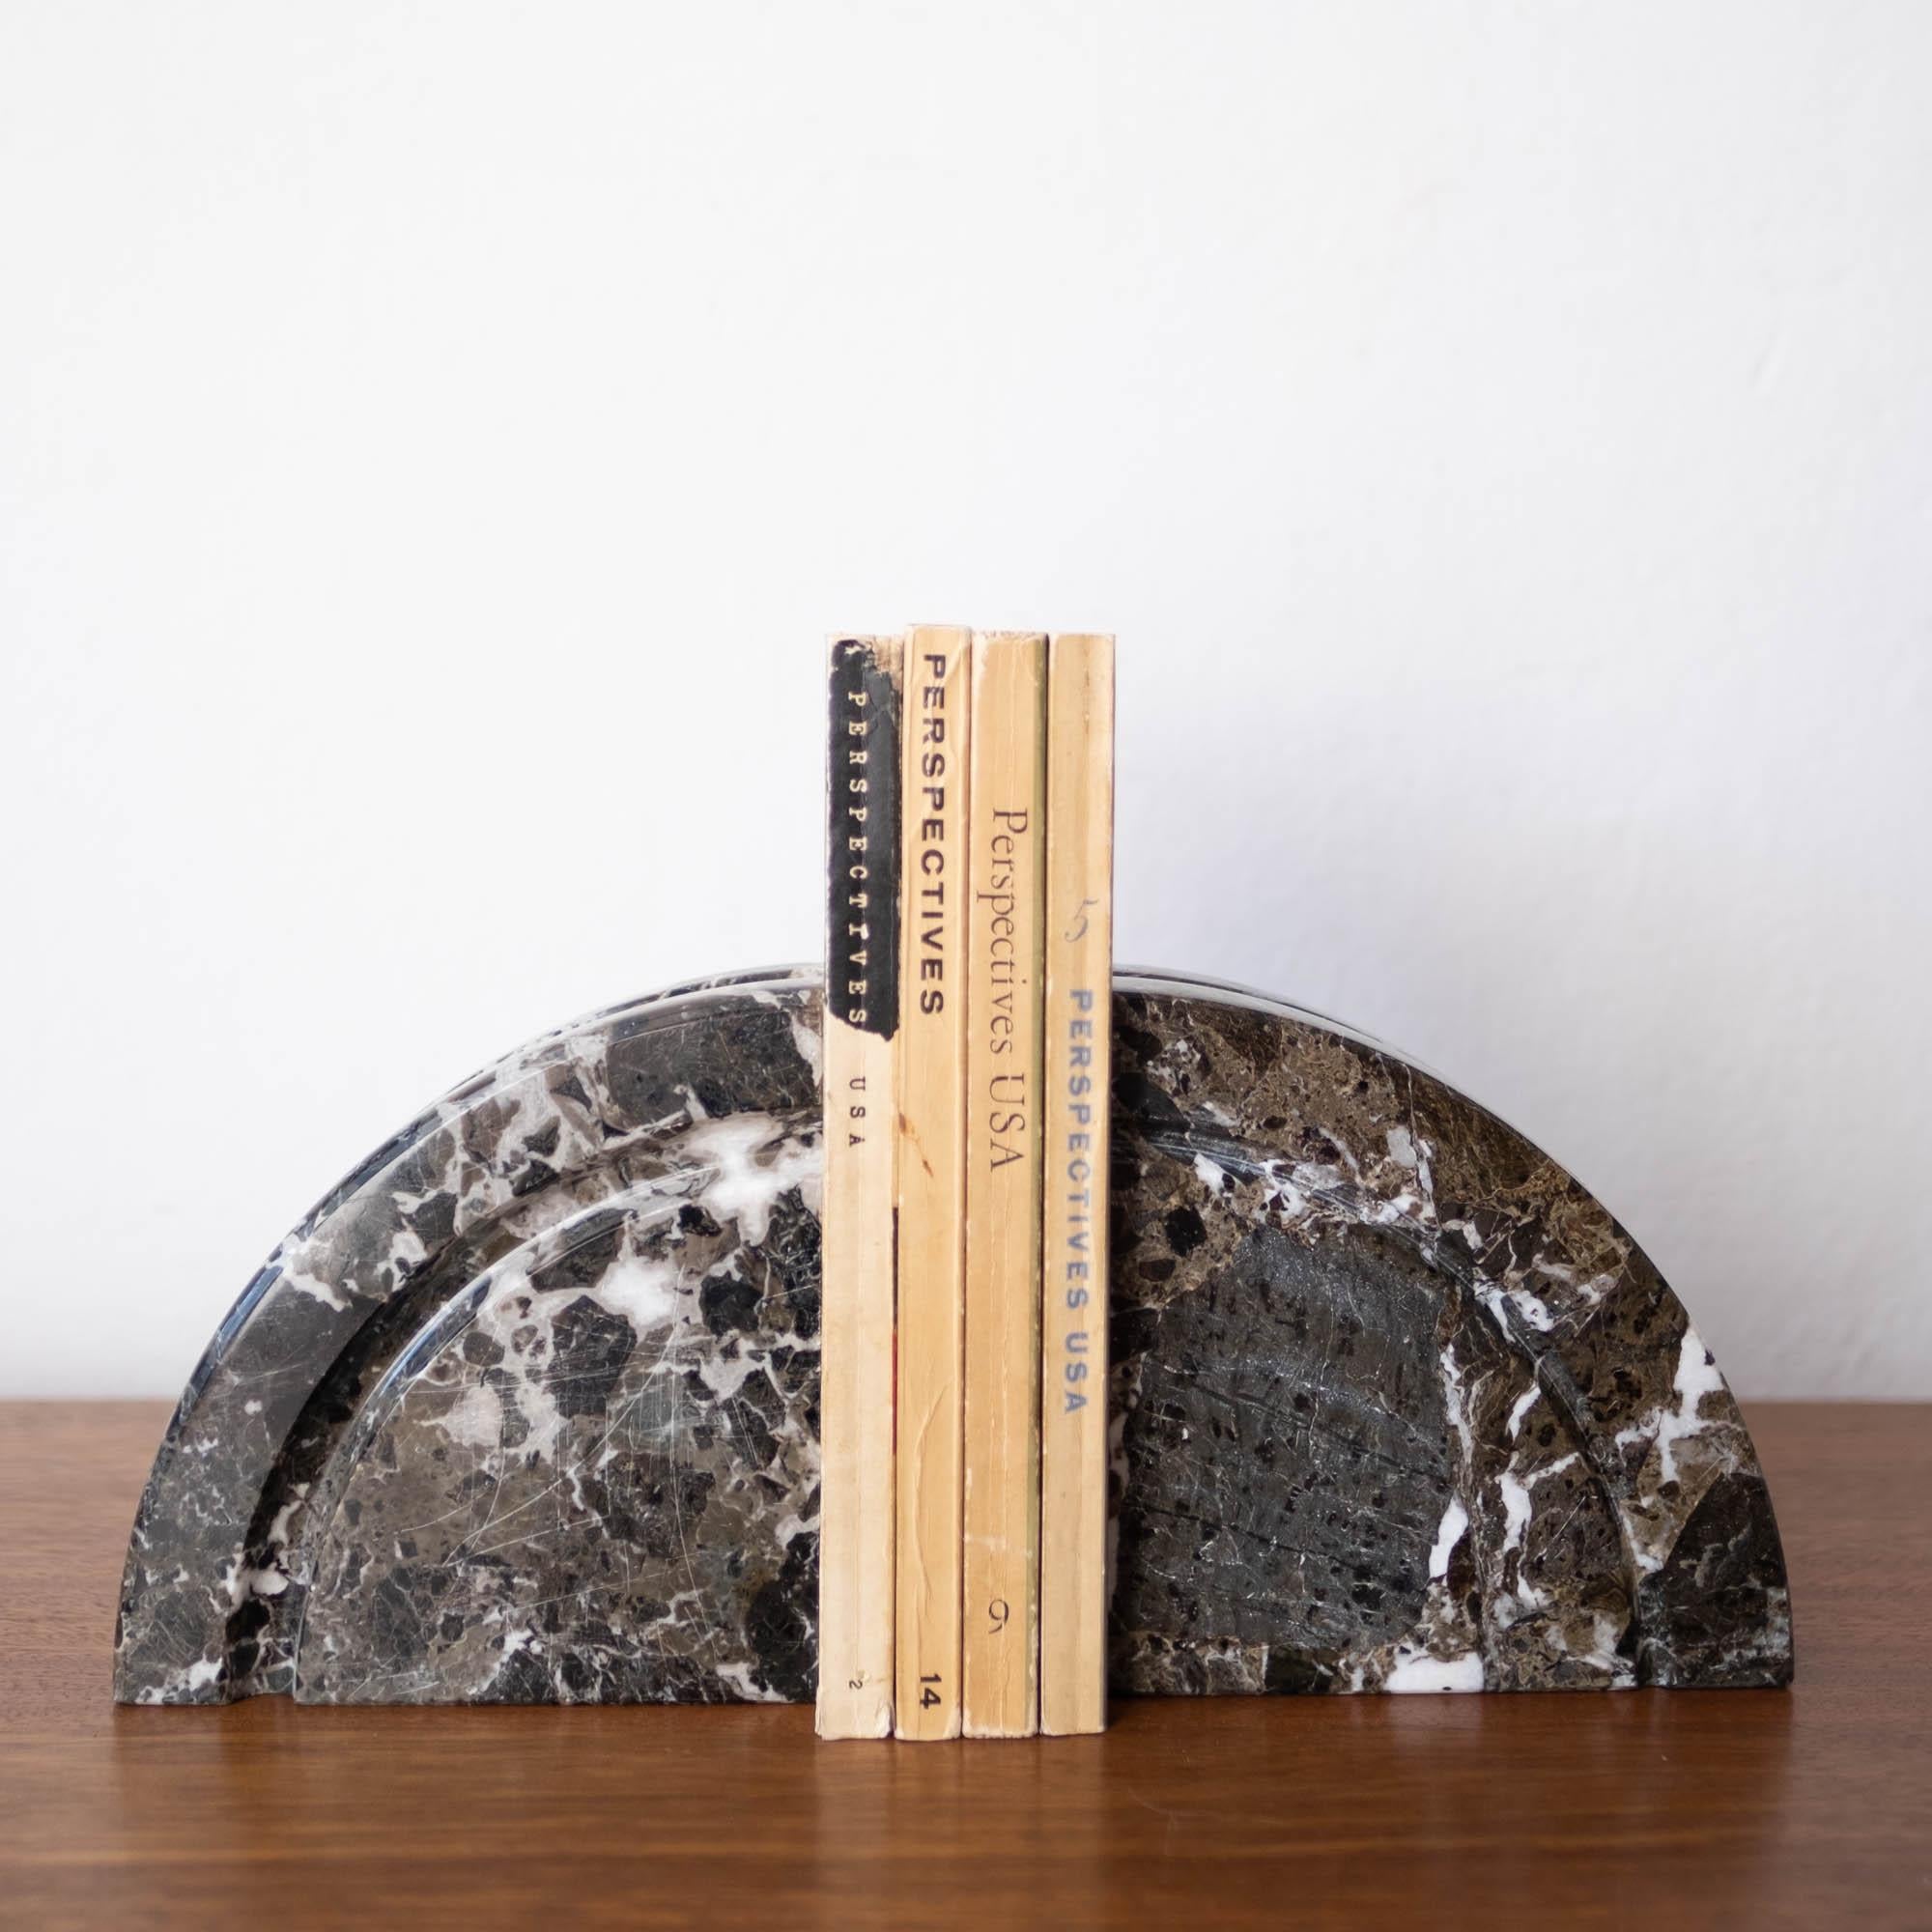 Belle paire de serre-livres italiens en marbre, datant des années 1970. Dans le style de Sergio Asti. La pierre est magnifiquement veinée et en excellent état. Ces serre-livres presque identiques sont sculpturaux et fonctionnels.